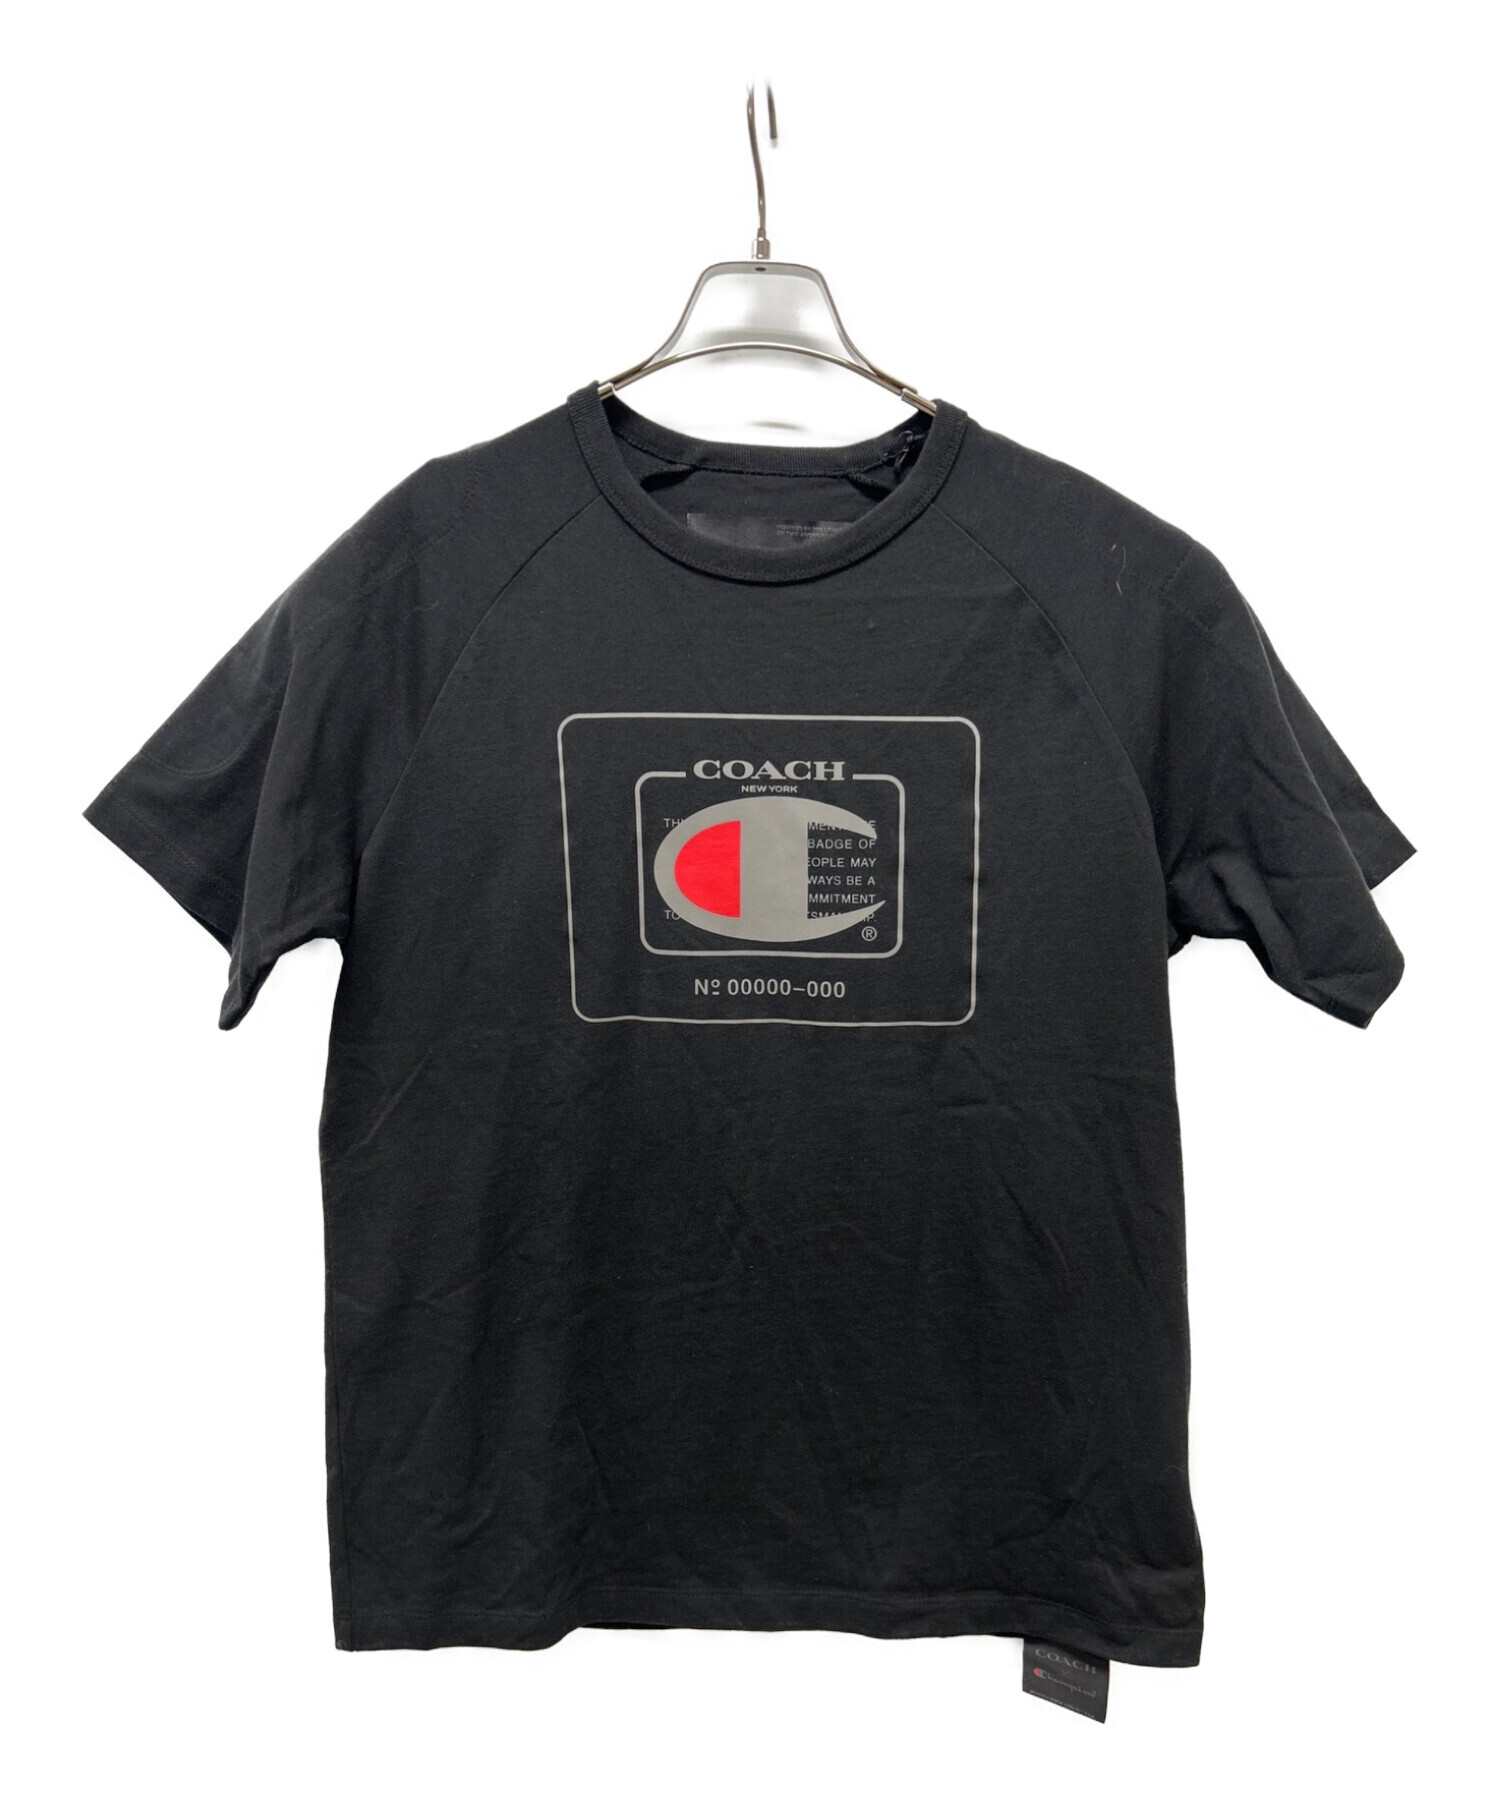 COACH×Champion (コーチ×チャンピオン) Tシャツ ブラック サイズ:SIZE S